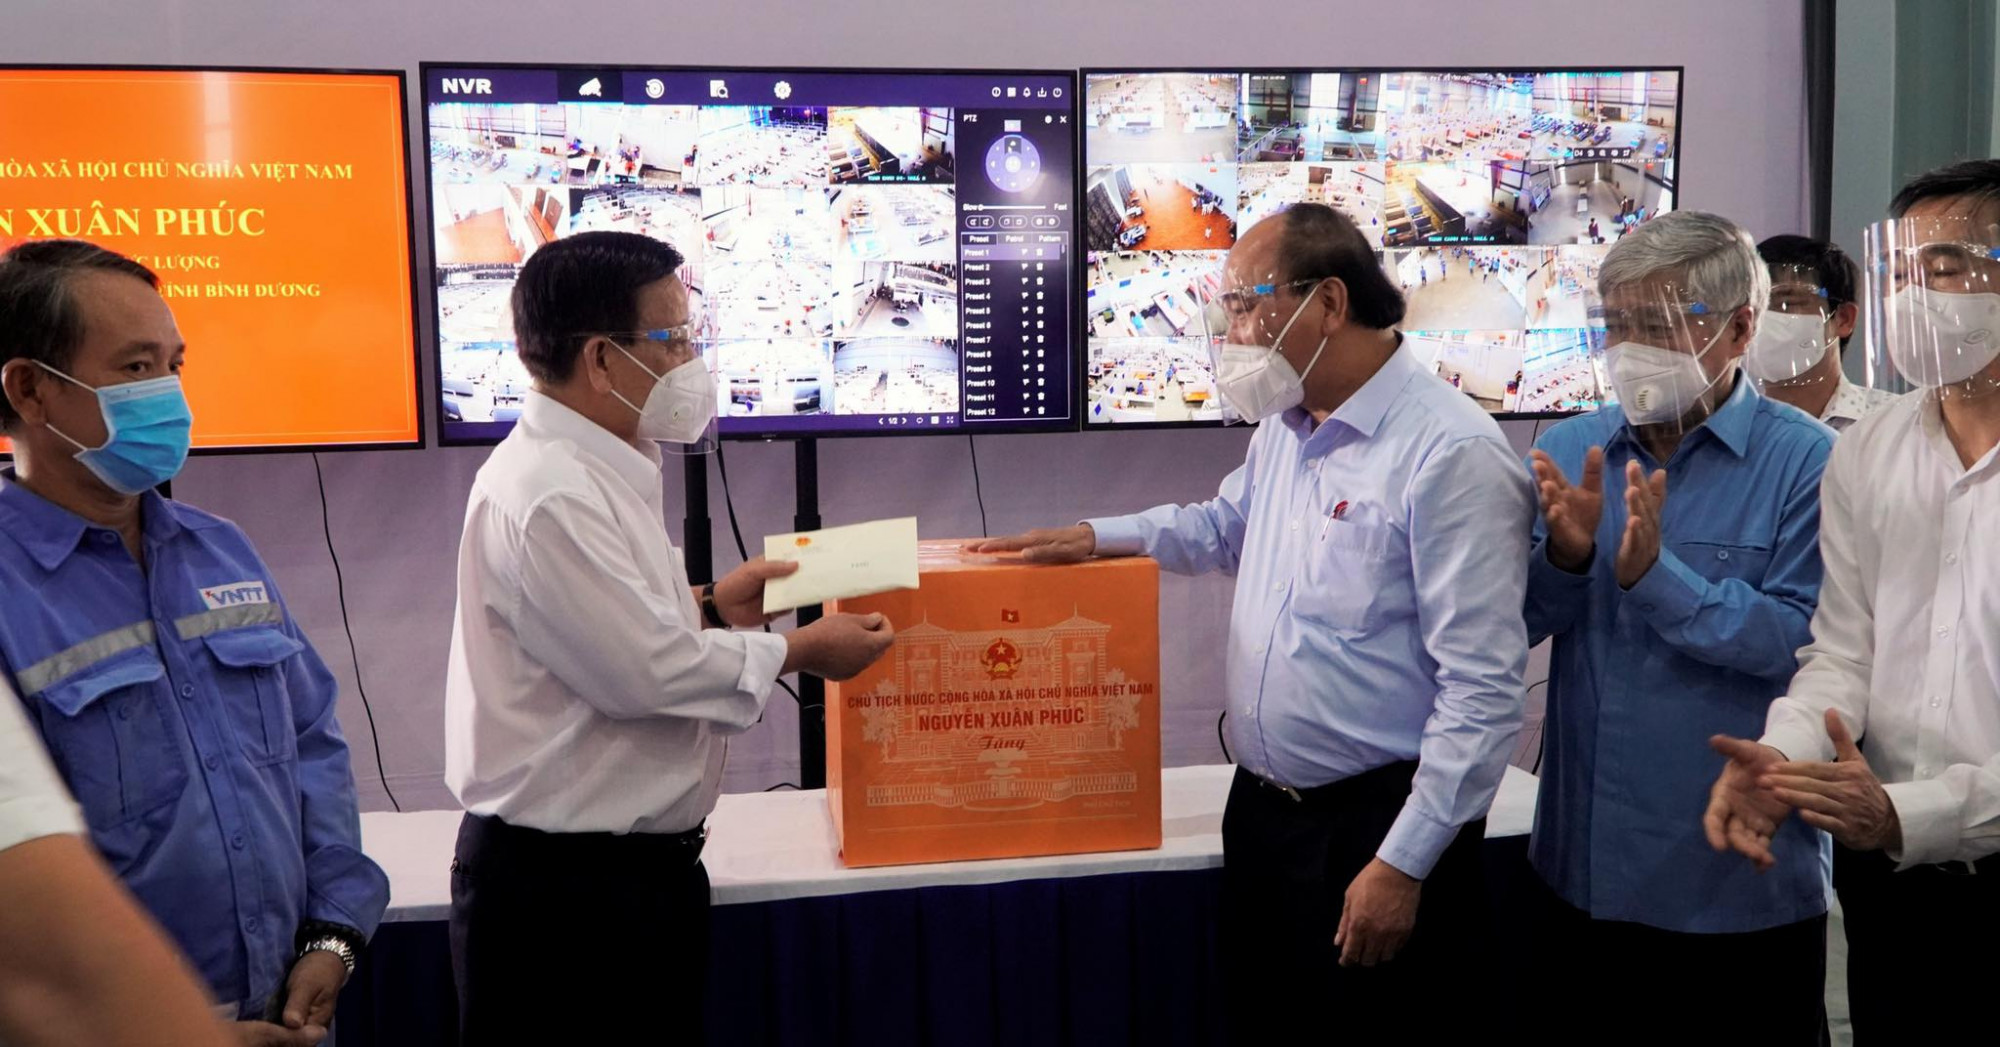 Chủ tịch nước tặng TP.Thuận An 3 tỉ đồng để thành phố trang bị thêm thiết bị y tế